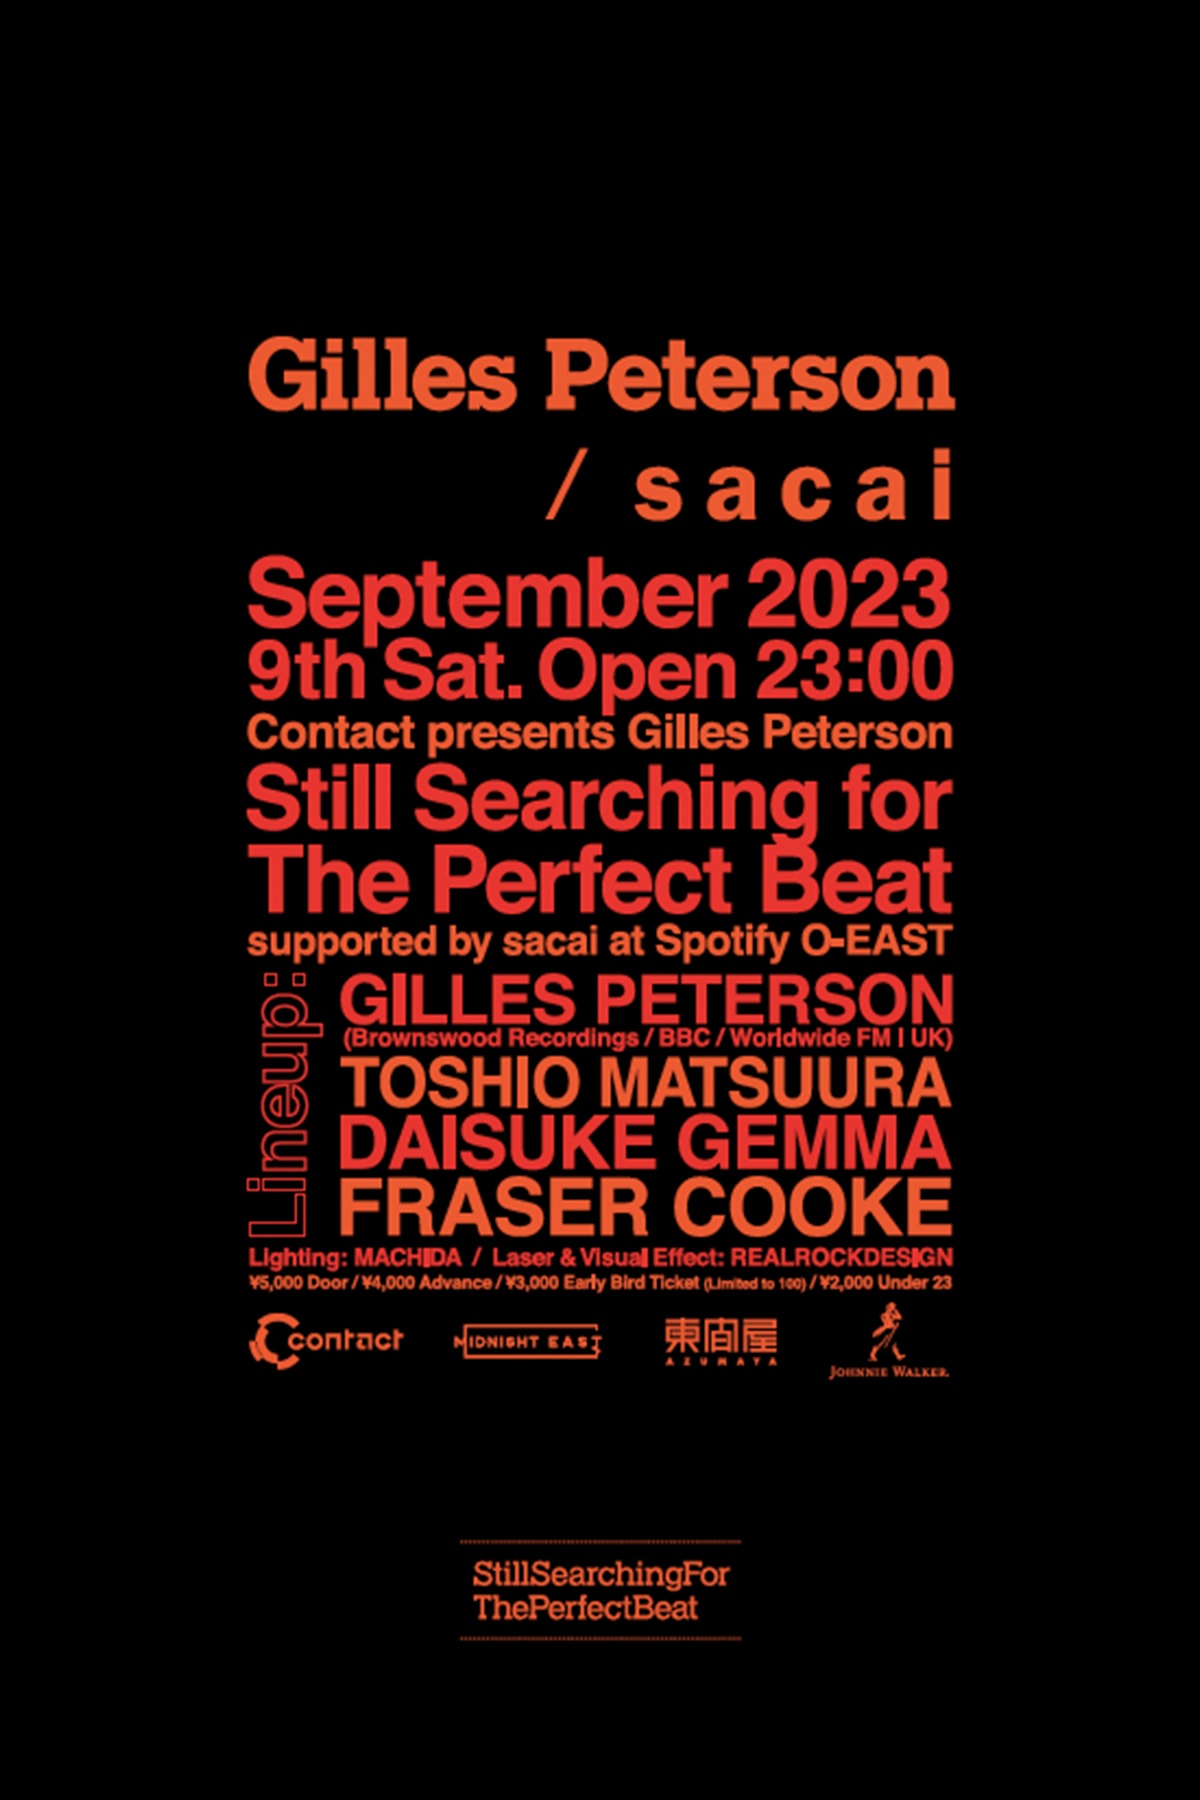 サカイからジャイルス・ピーターソンの来日ツアー記念Tシャツが発売 sacai  Gilles Peterson Still Searching for The Perfect Beat japan tour T-shirts release info